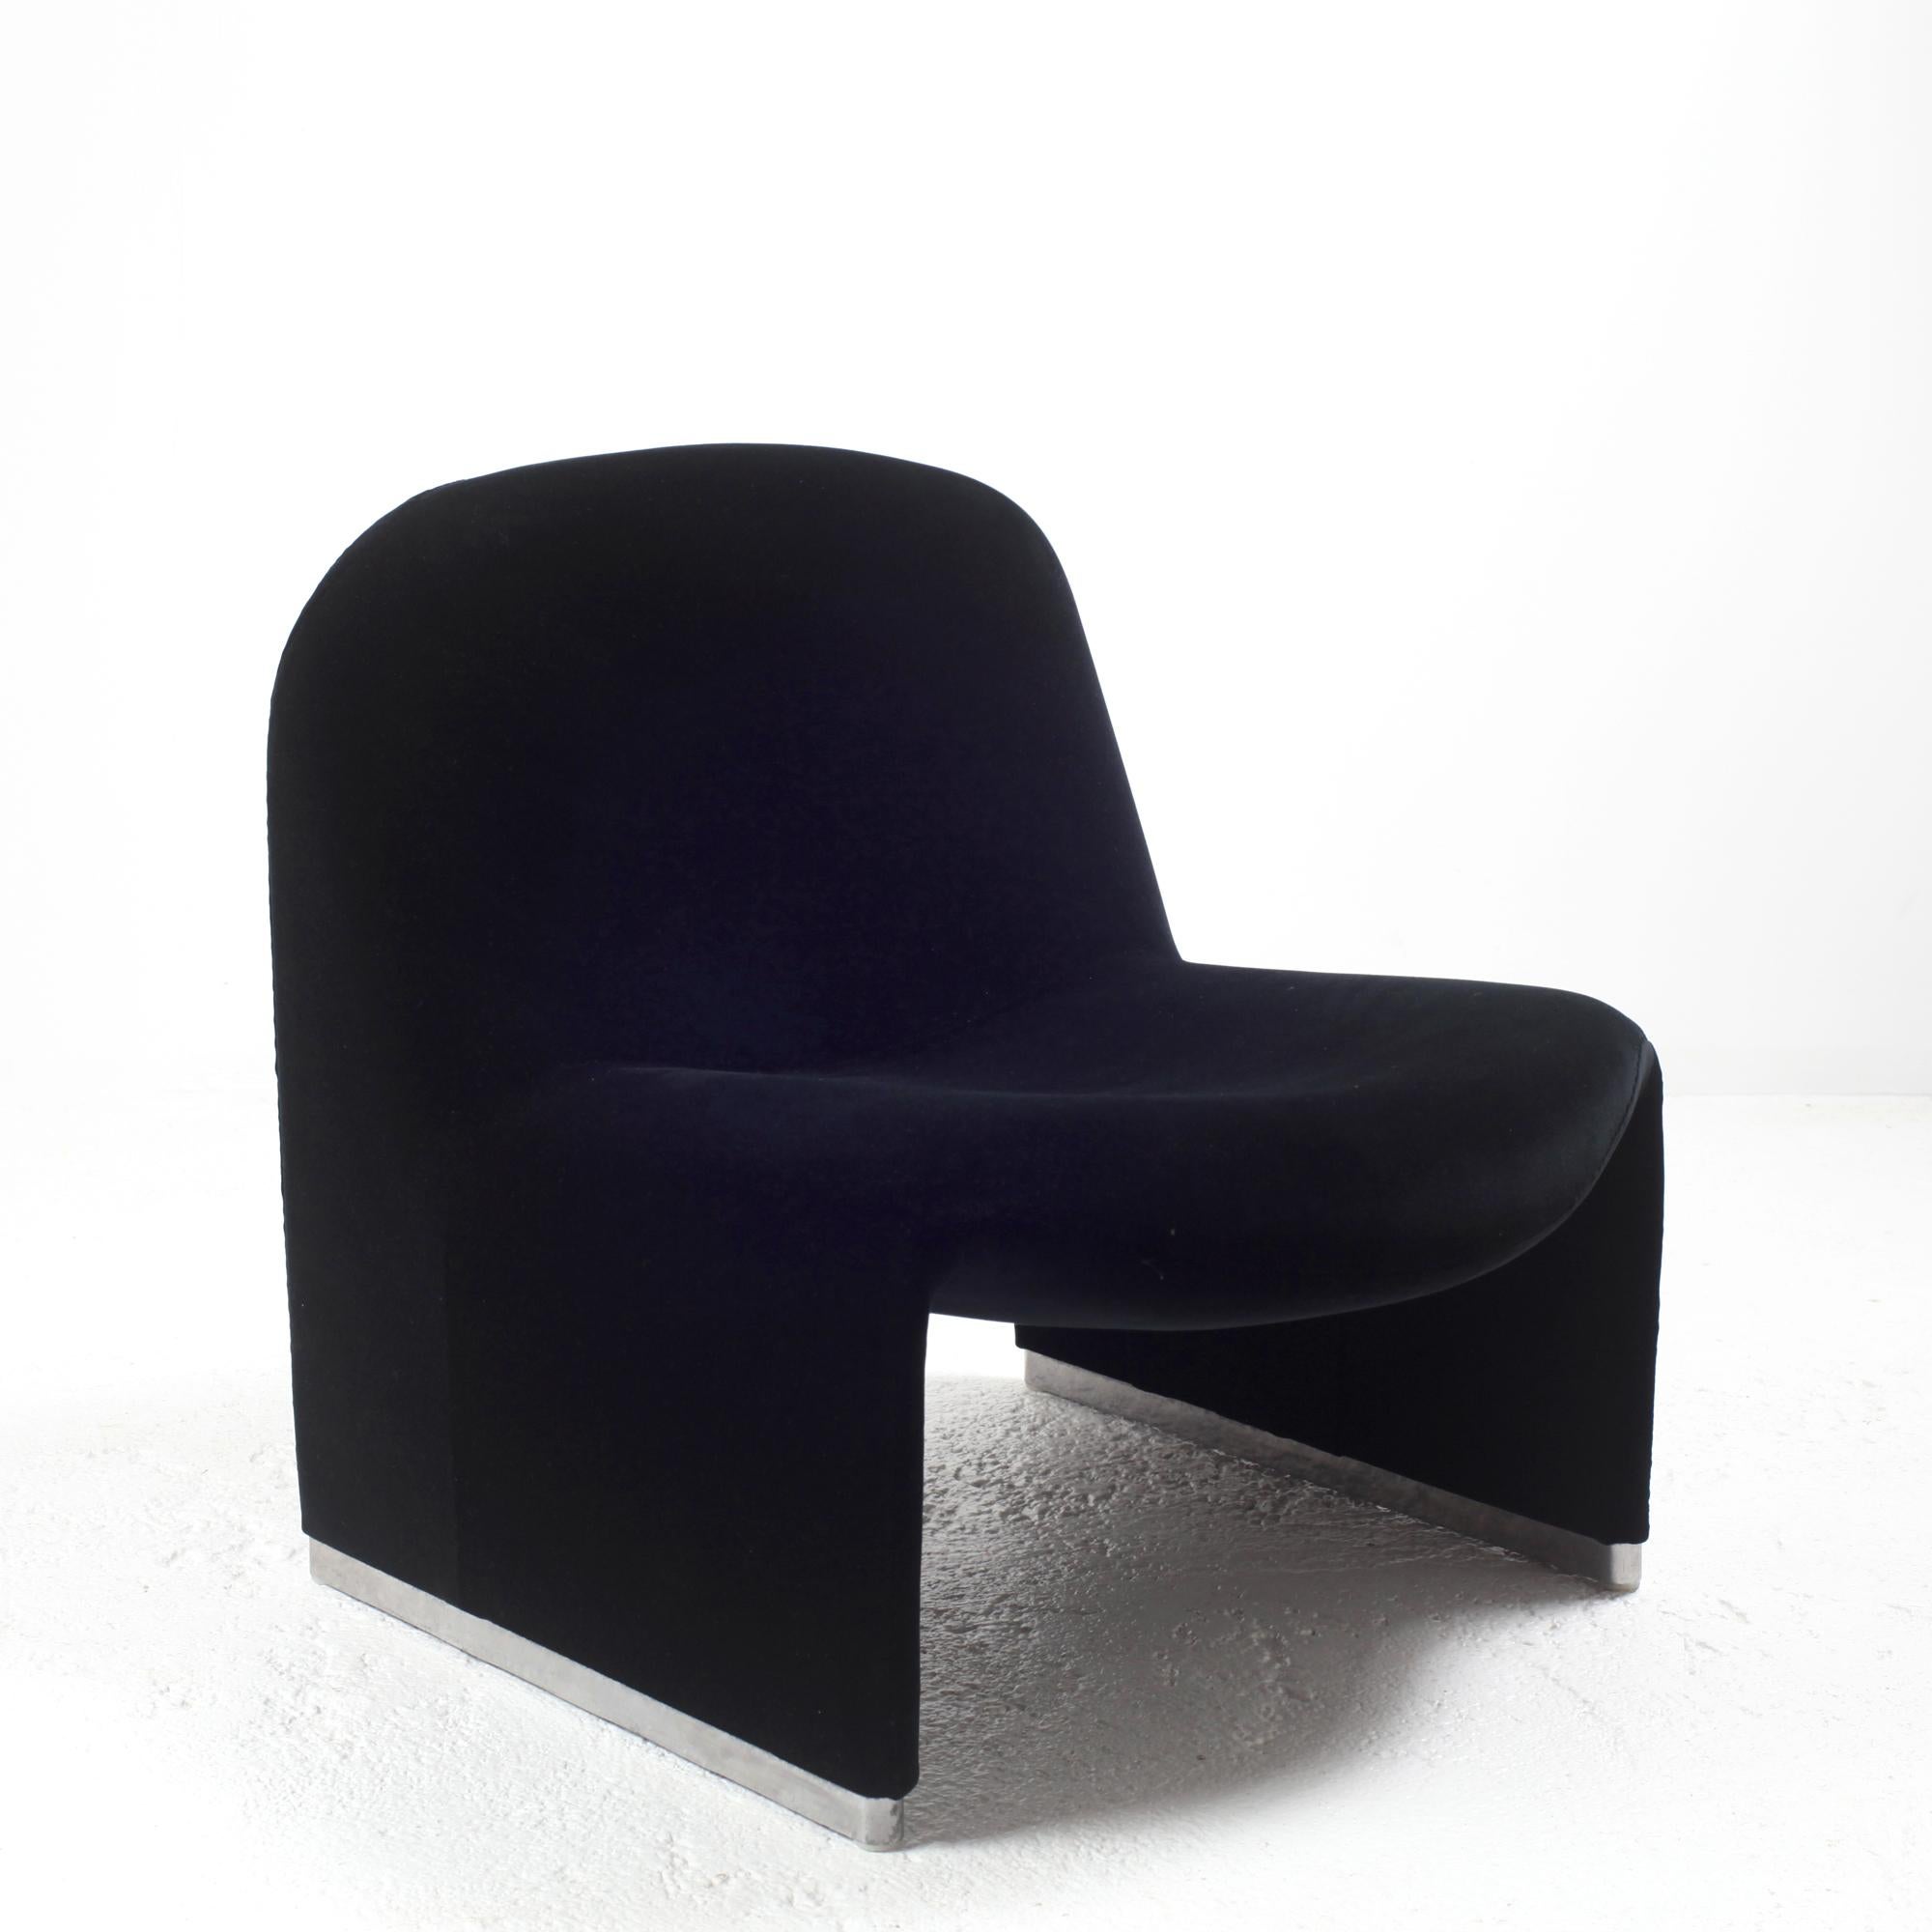 Aluminum Giancarlo Piretti “Alky” Chair in New Black Velvet, for Castelli Italy, 1970s